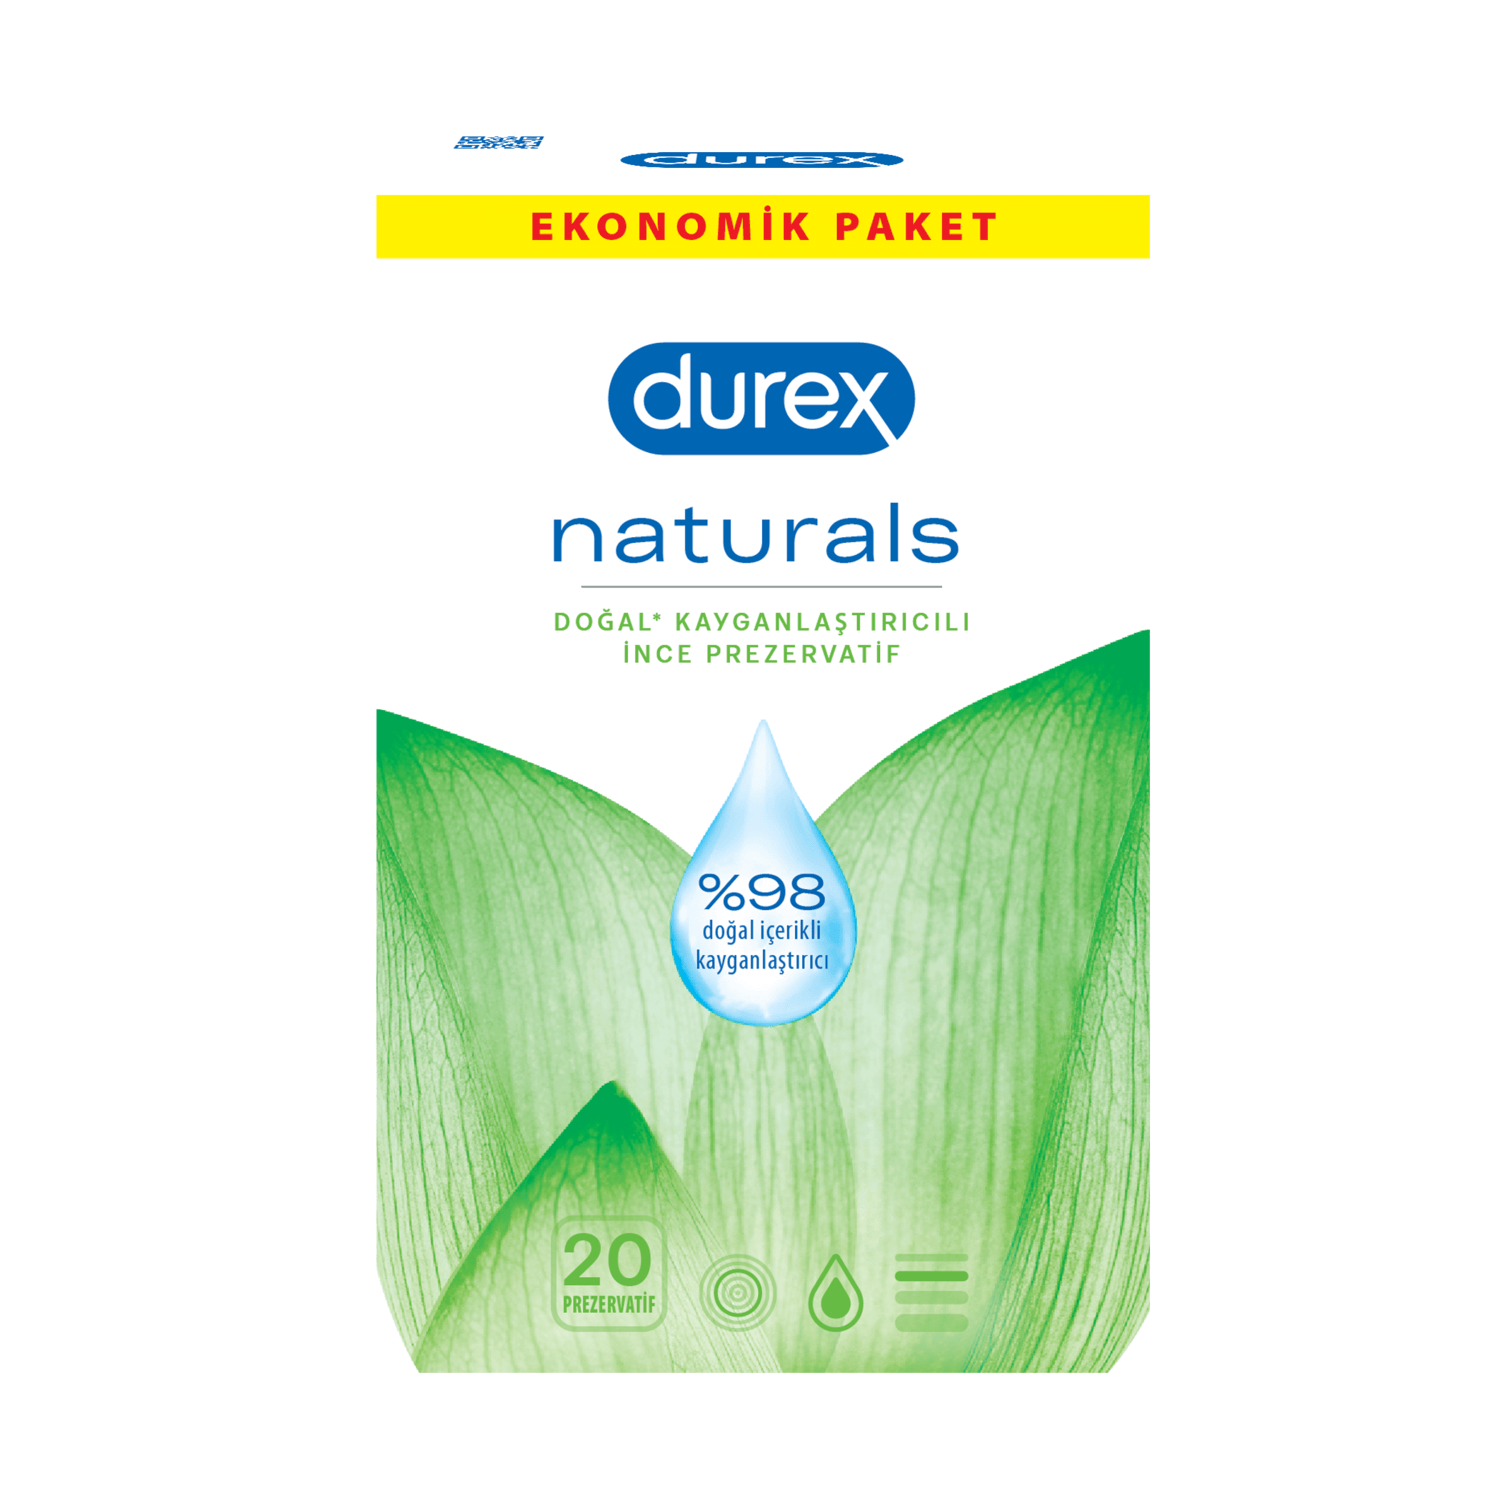 Durex Naturals 20'li Prezervatif